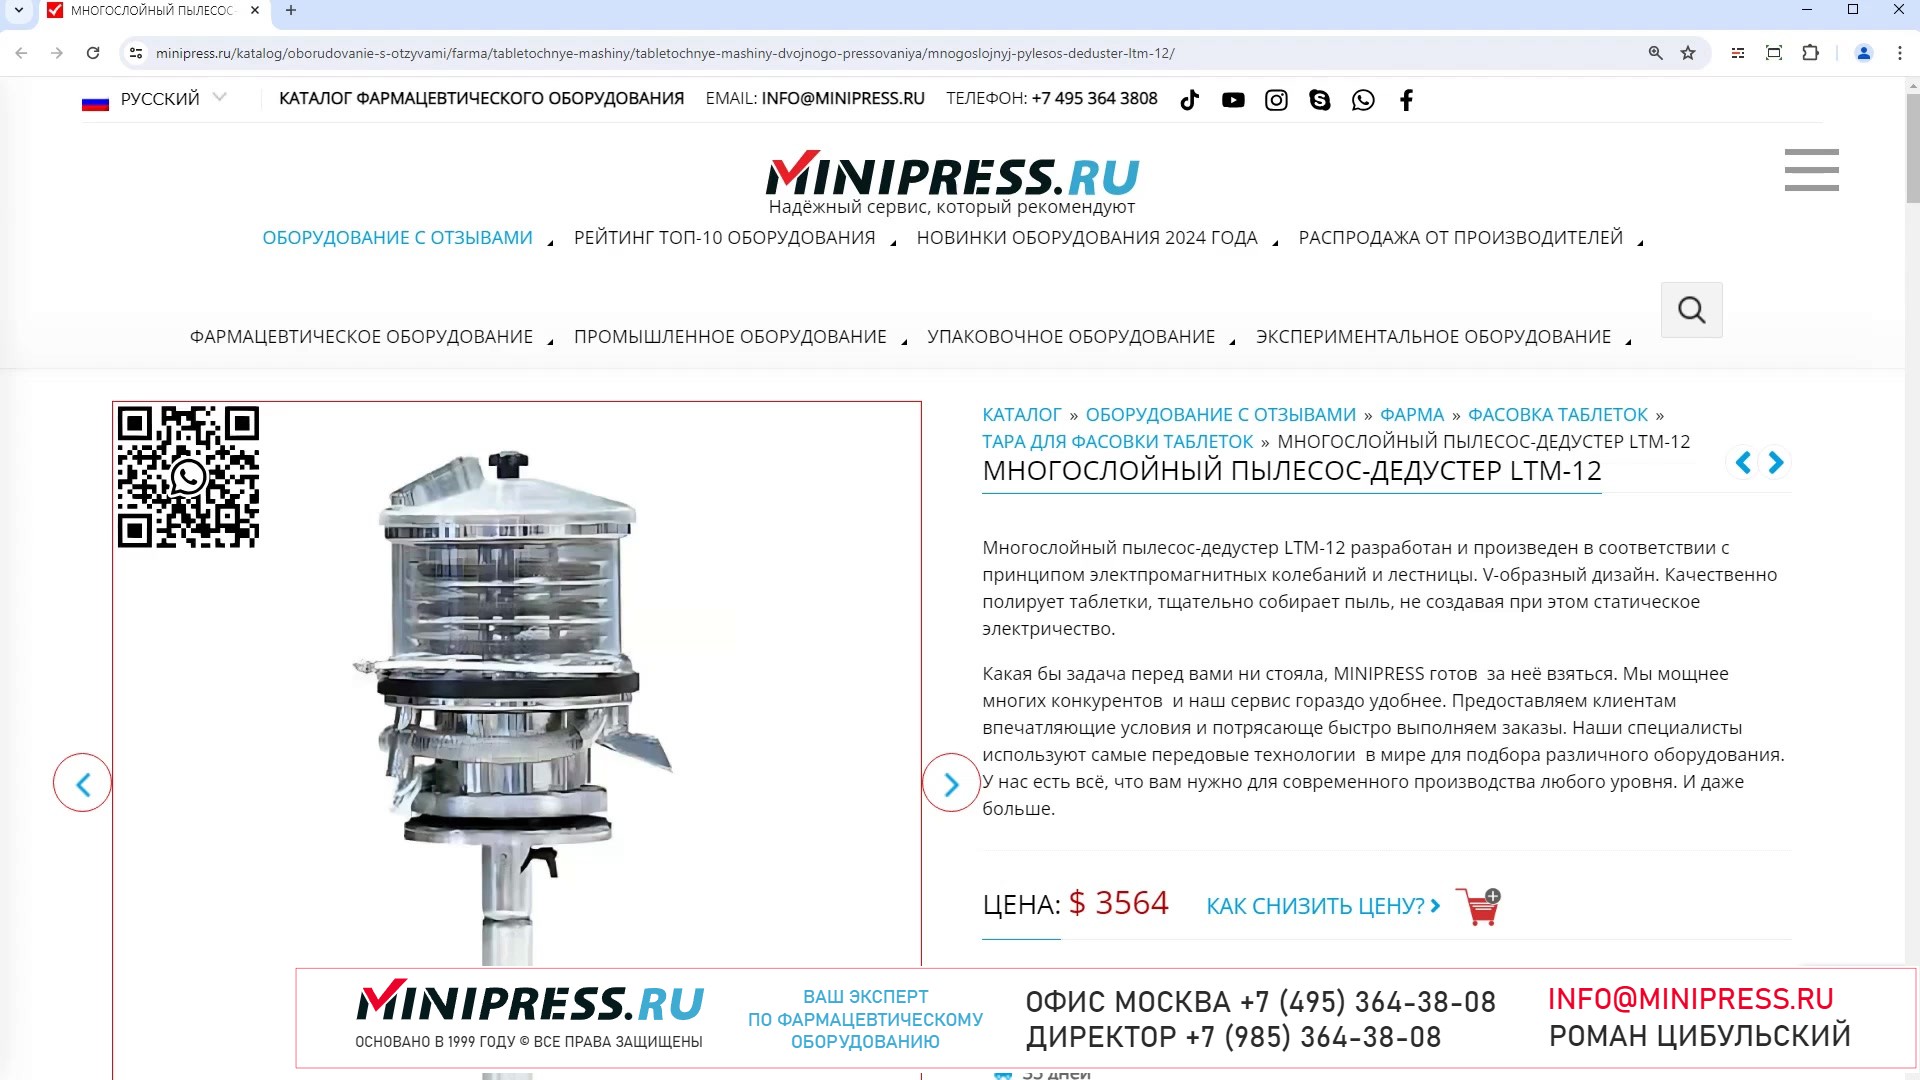 Minipress.ru Многослойный пылесос-дедустер LTM-12